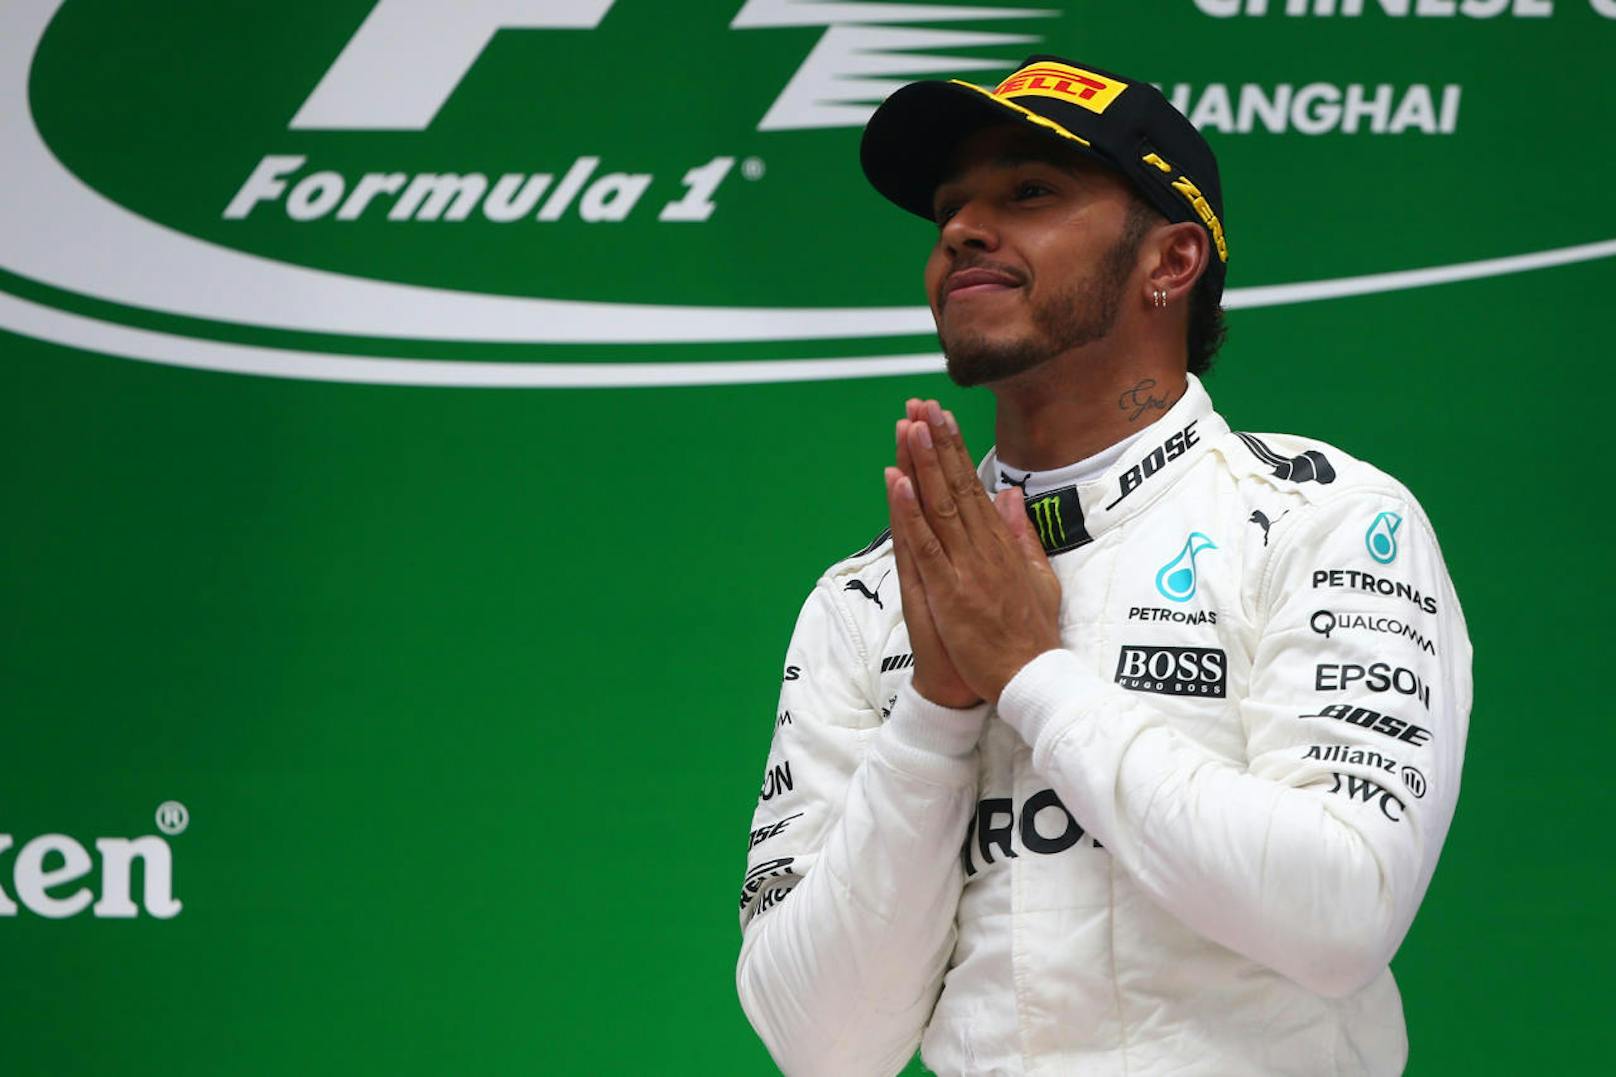 <b>Platz 1:</b> Lewis Hamilton. Der Mercedes-Pilot hat außer drei WM-Titel in der Formel 1 (2008, 2014, 2015) auch 155 Millionen Euro am Konto vorzuweisen.